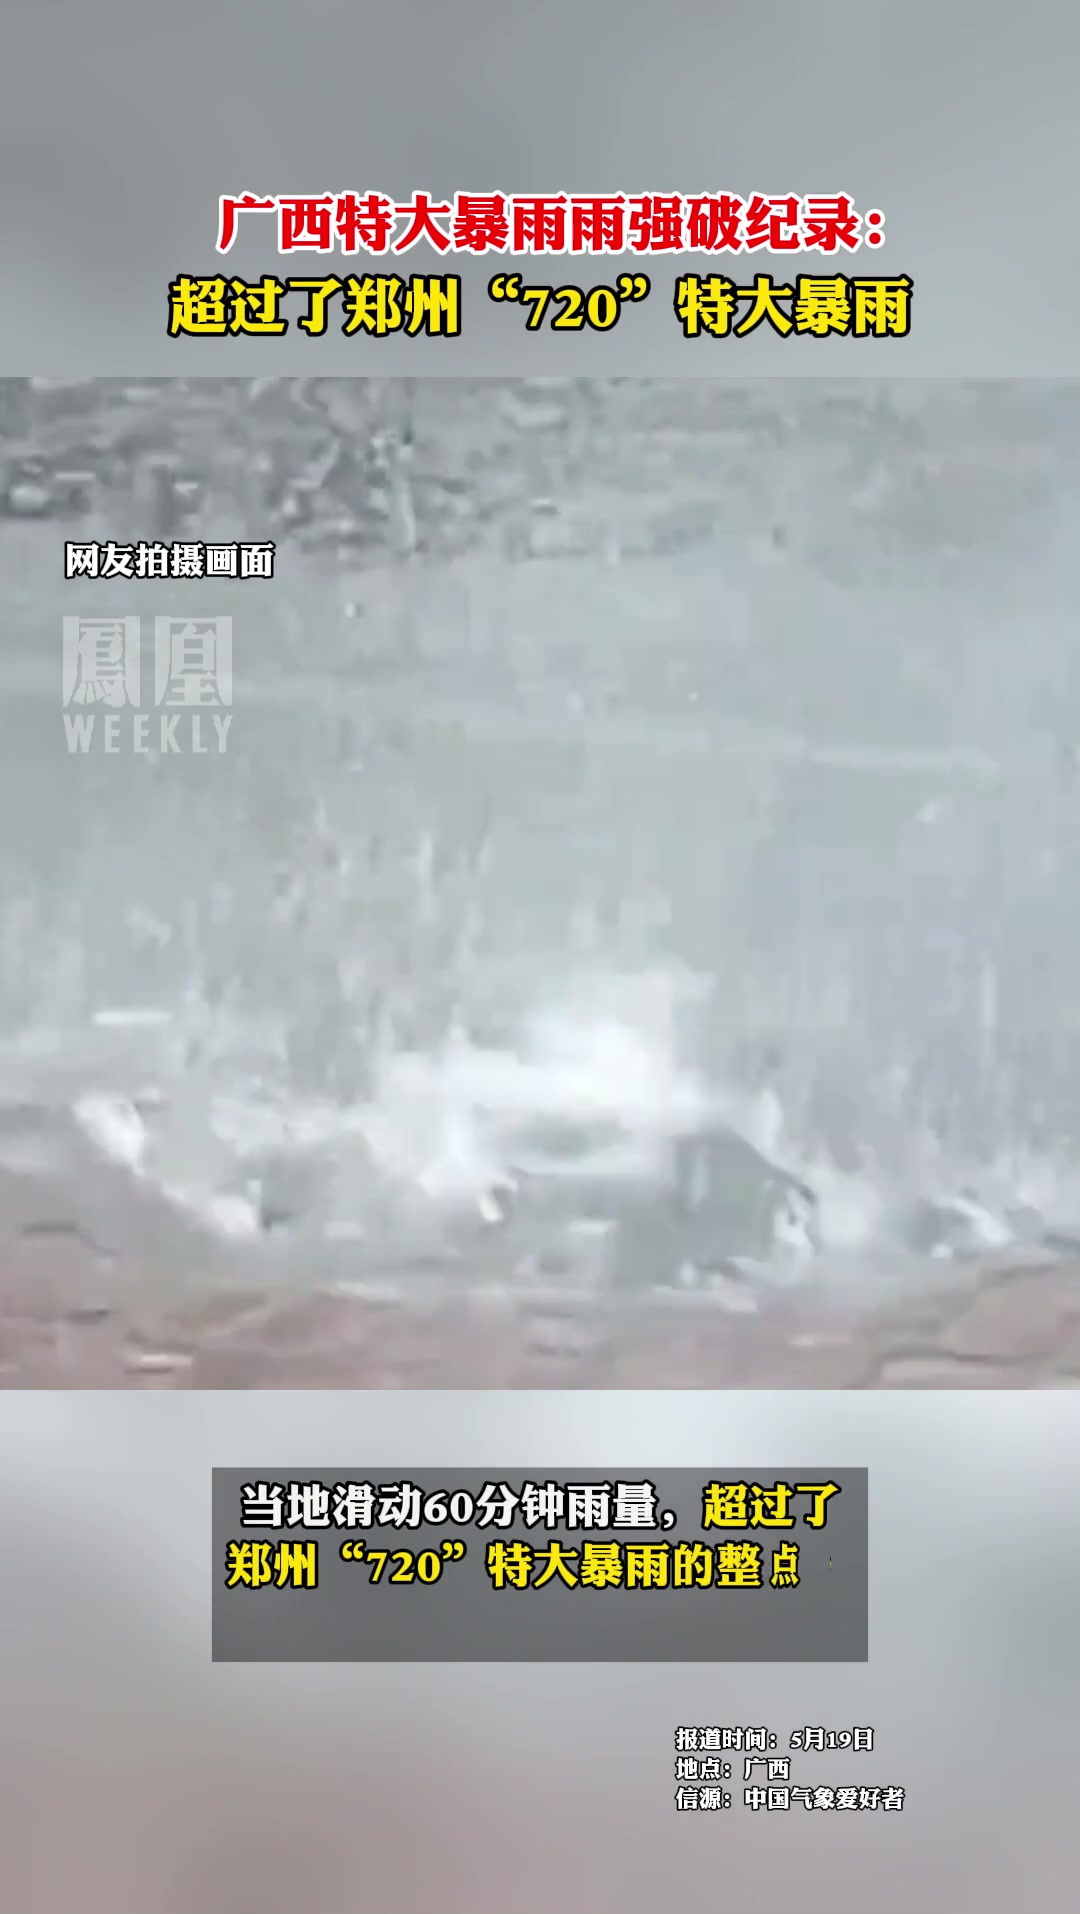 广西特大暴雨雨强破纪录 ，超过了郑州“720”特大暴雨